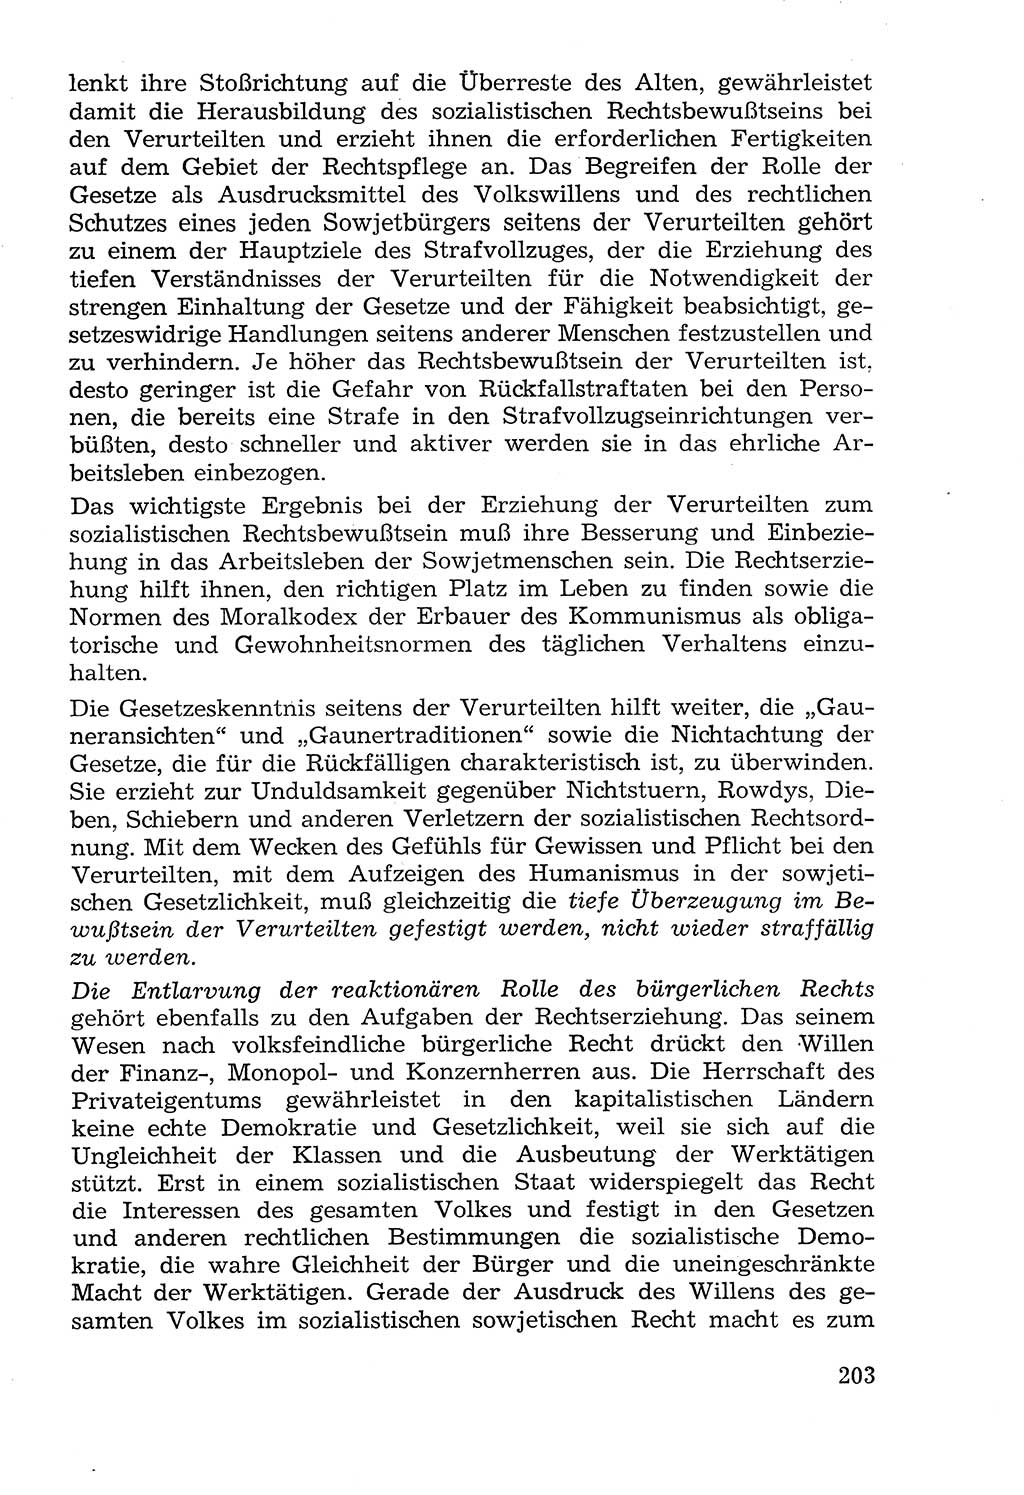 Lehrbuch der Strafvollzugspädagogik [Deutsche Demokratische Republik (DDR)] 1969, Seite 203 (Lb. SV-Pd. DDR 1969, S. 203)